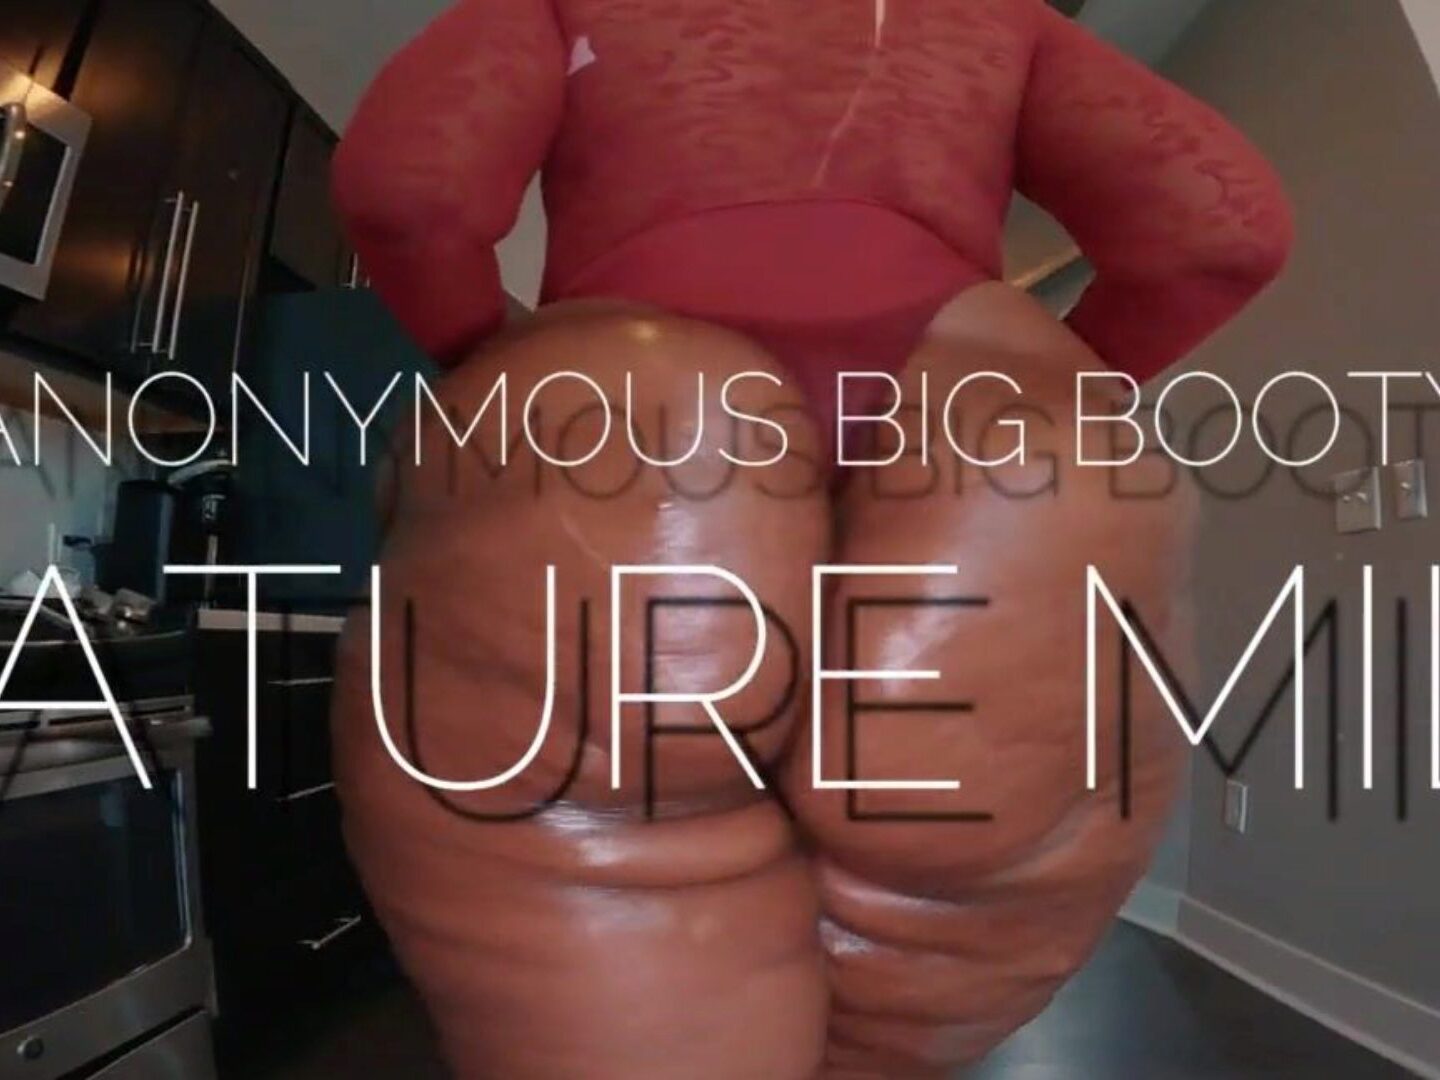 Vidéos Porno Gratuites De Big Booty